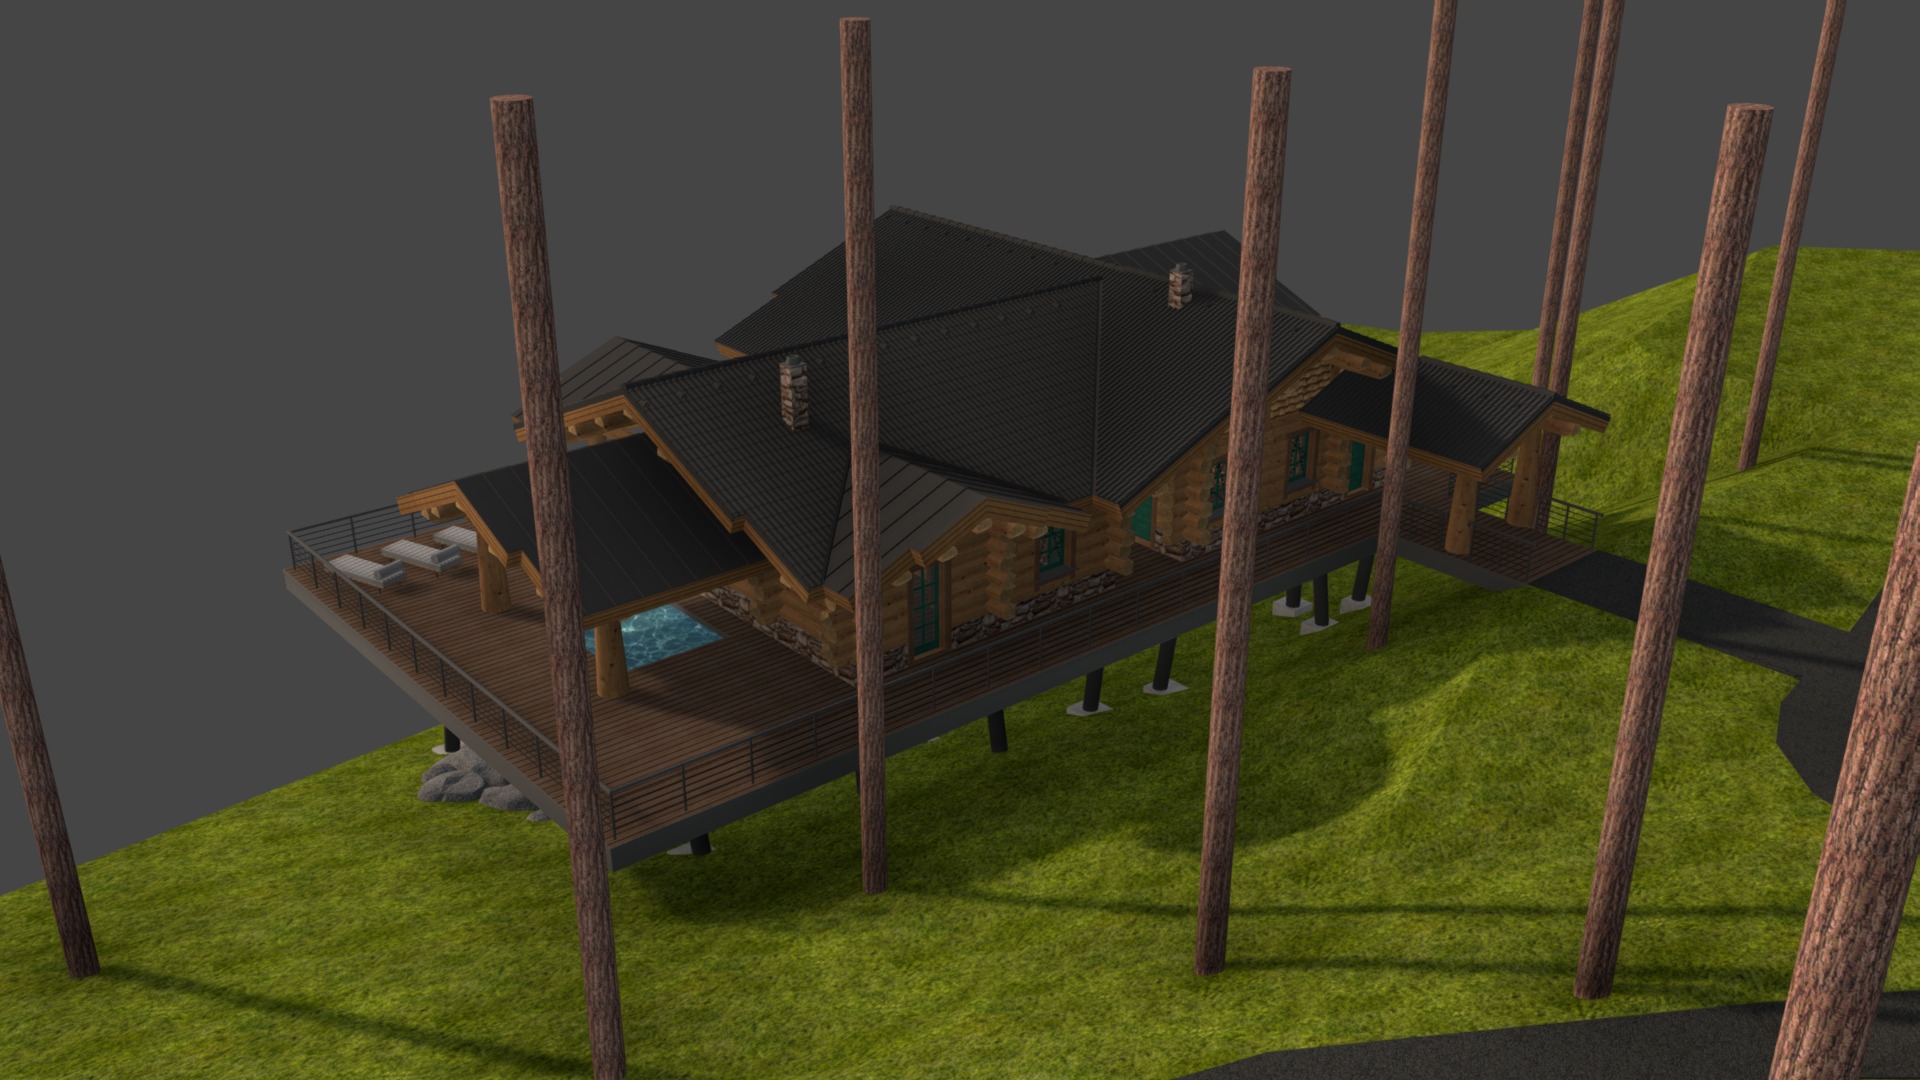 3D model АРХЫЗ 5 - This is a 3D model of the АРХЫЗ 5. The 3D model is about a house on a swing set.